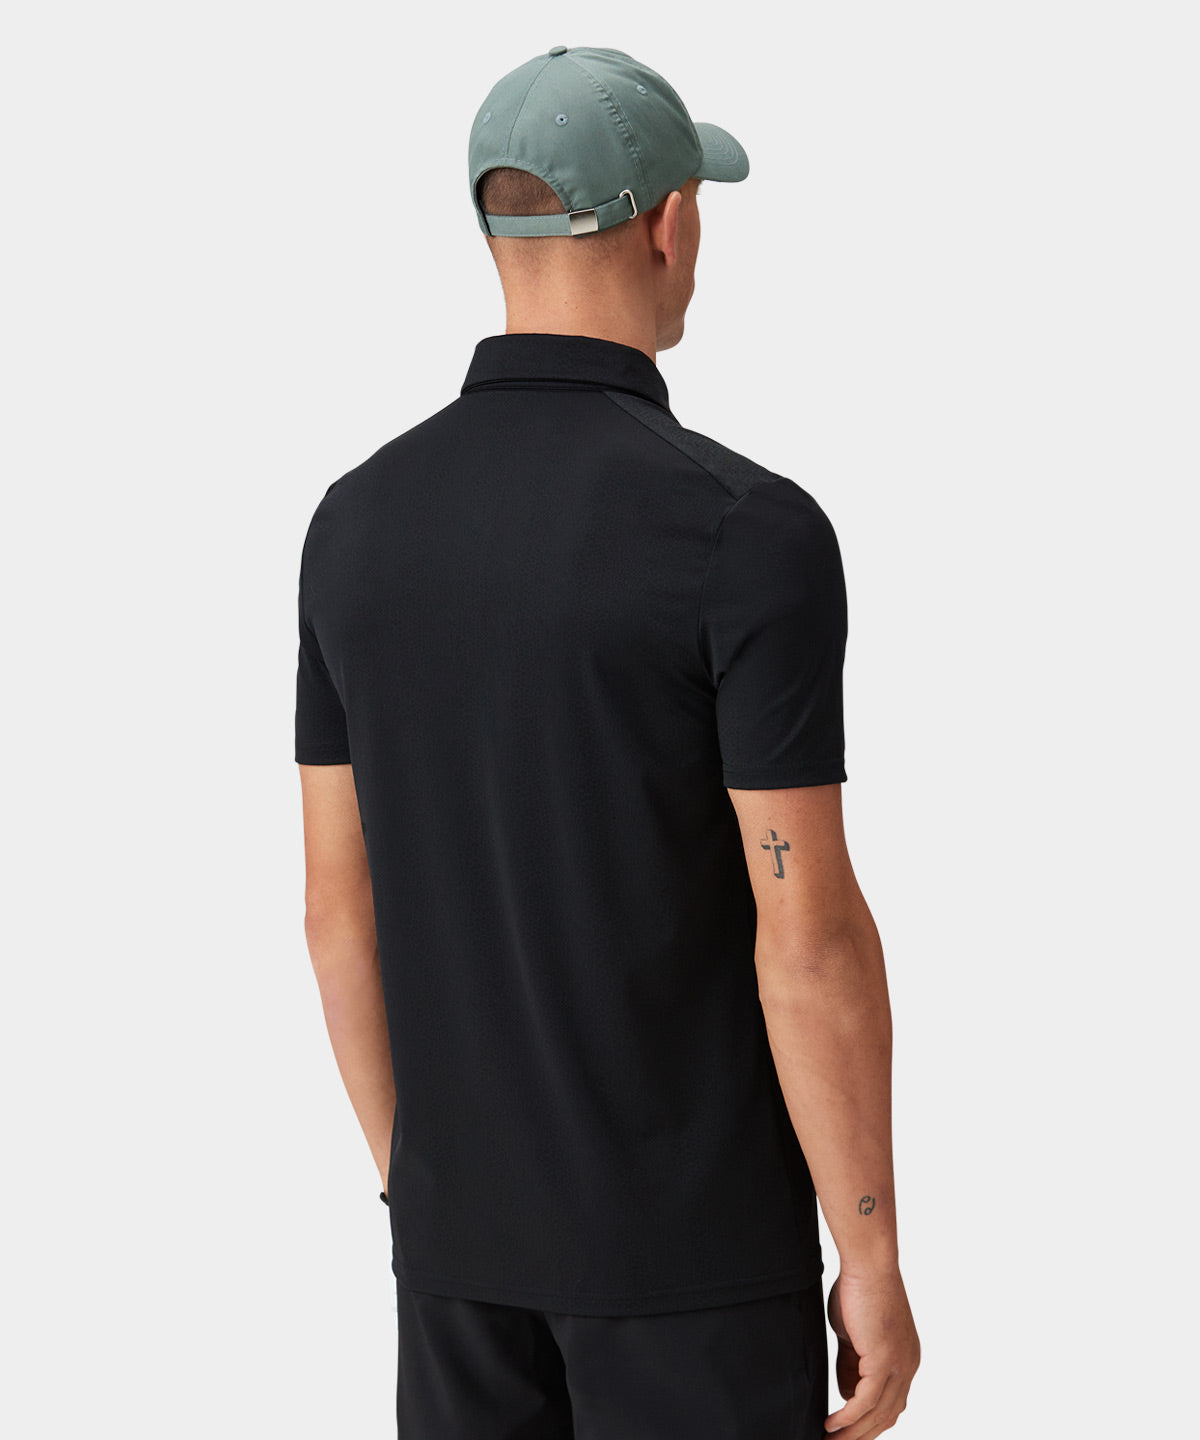 Nevis Black Performance Shirt Macade Golf